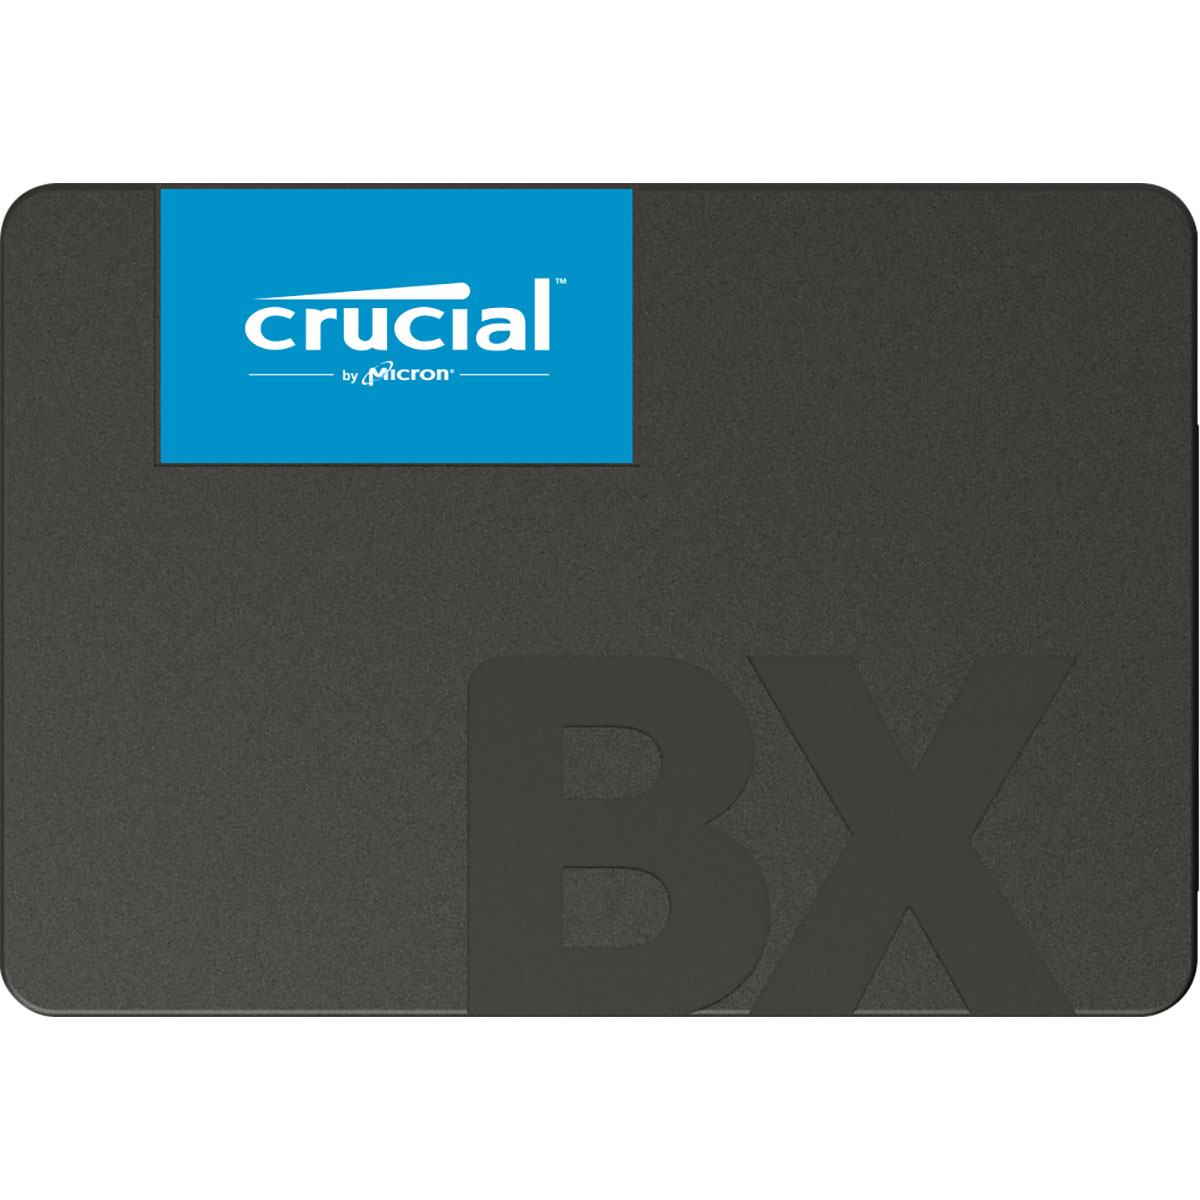 Disque dur SSD Crucial BX500 2To 2.5 pouces (7mm) Serial ATA 3 (6Gb/s)s, informatique ile de la Runion 974